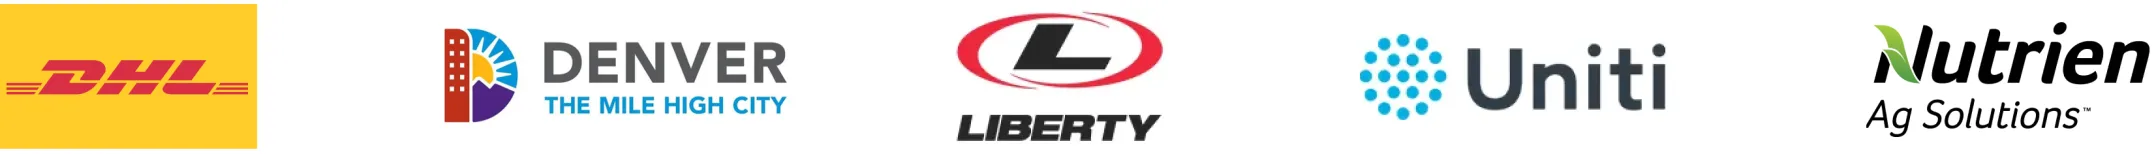 DHL logo, City and County of Denver Logo, Liberty logo, Uniti logo, mach logo